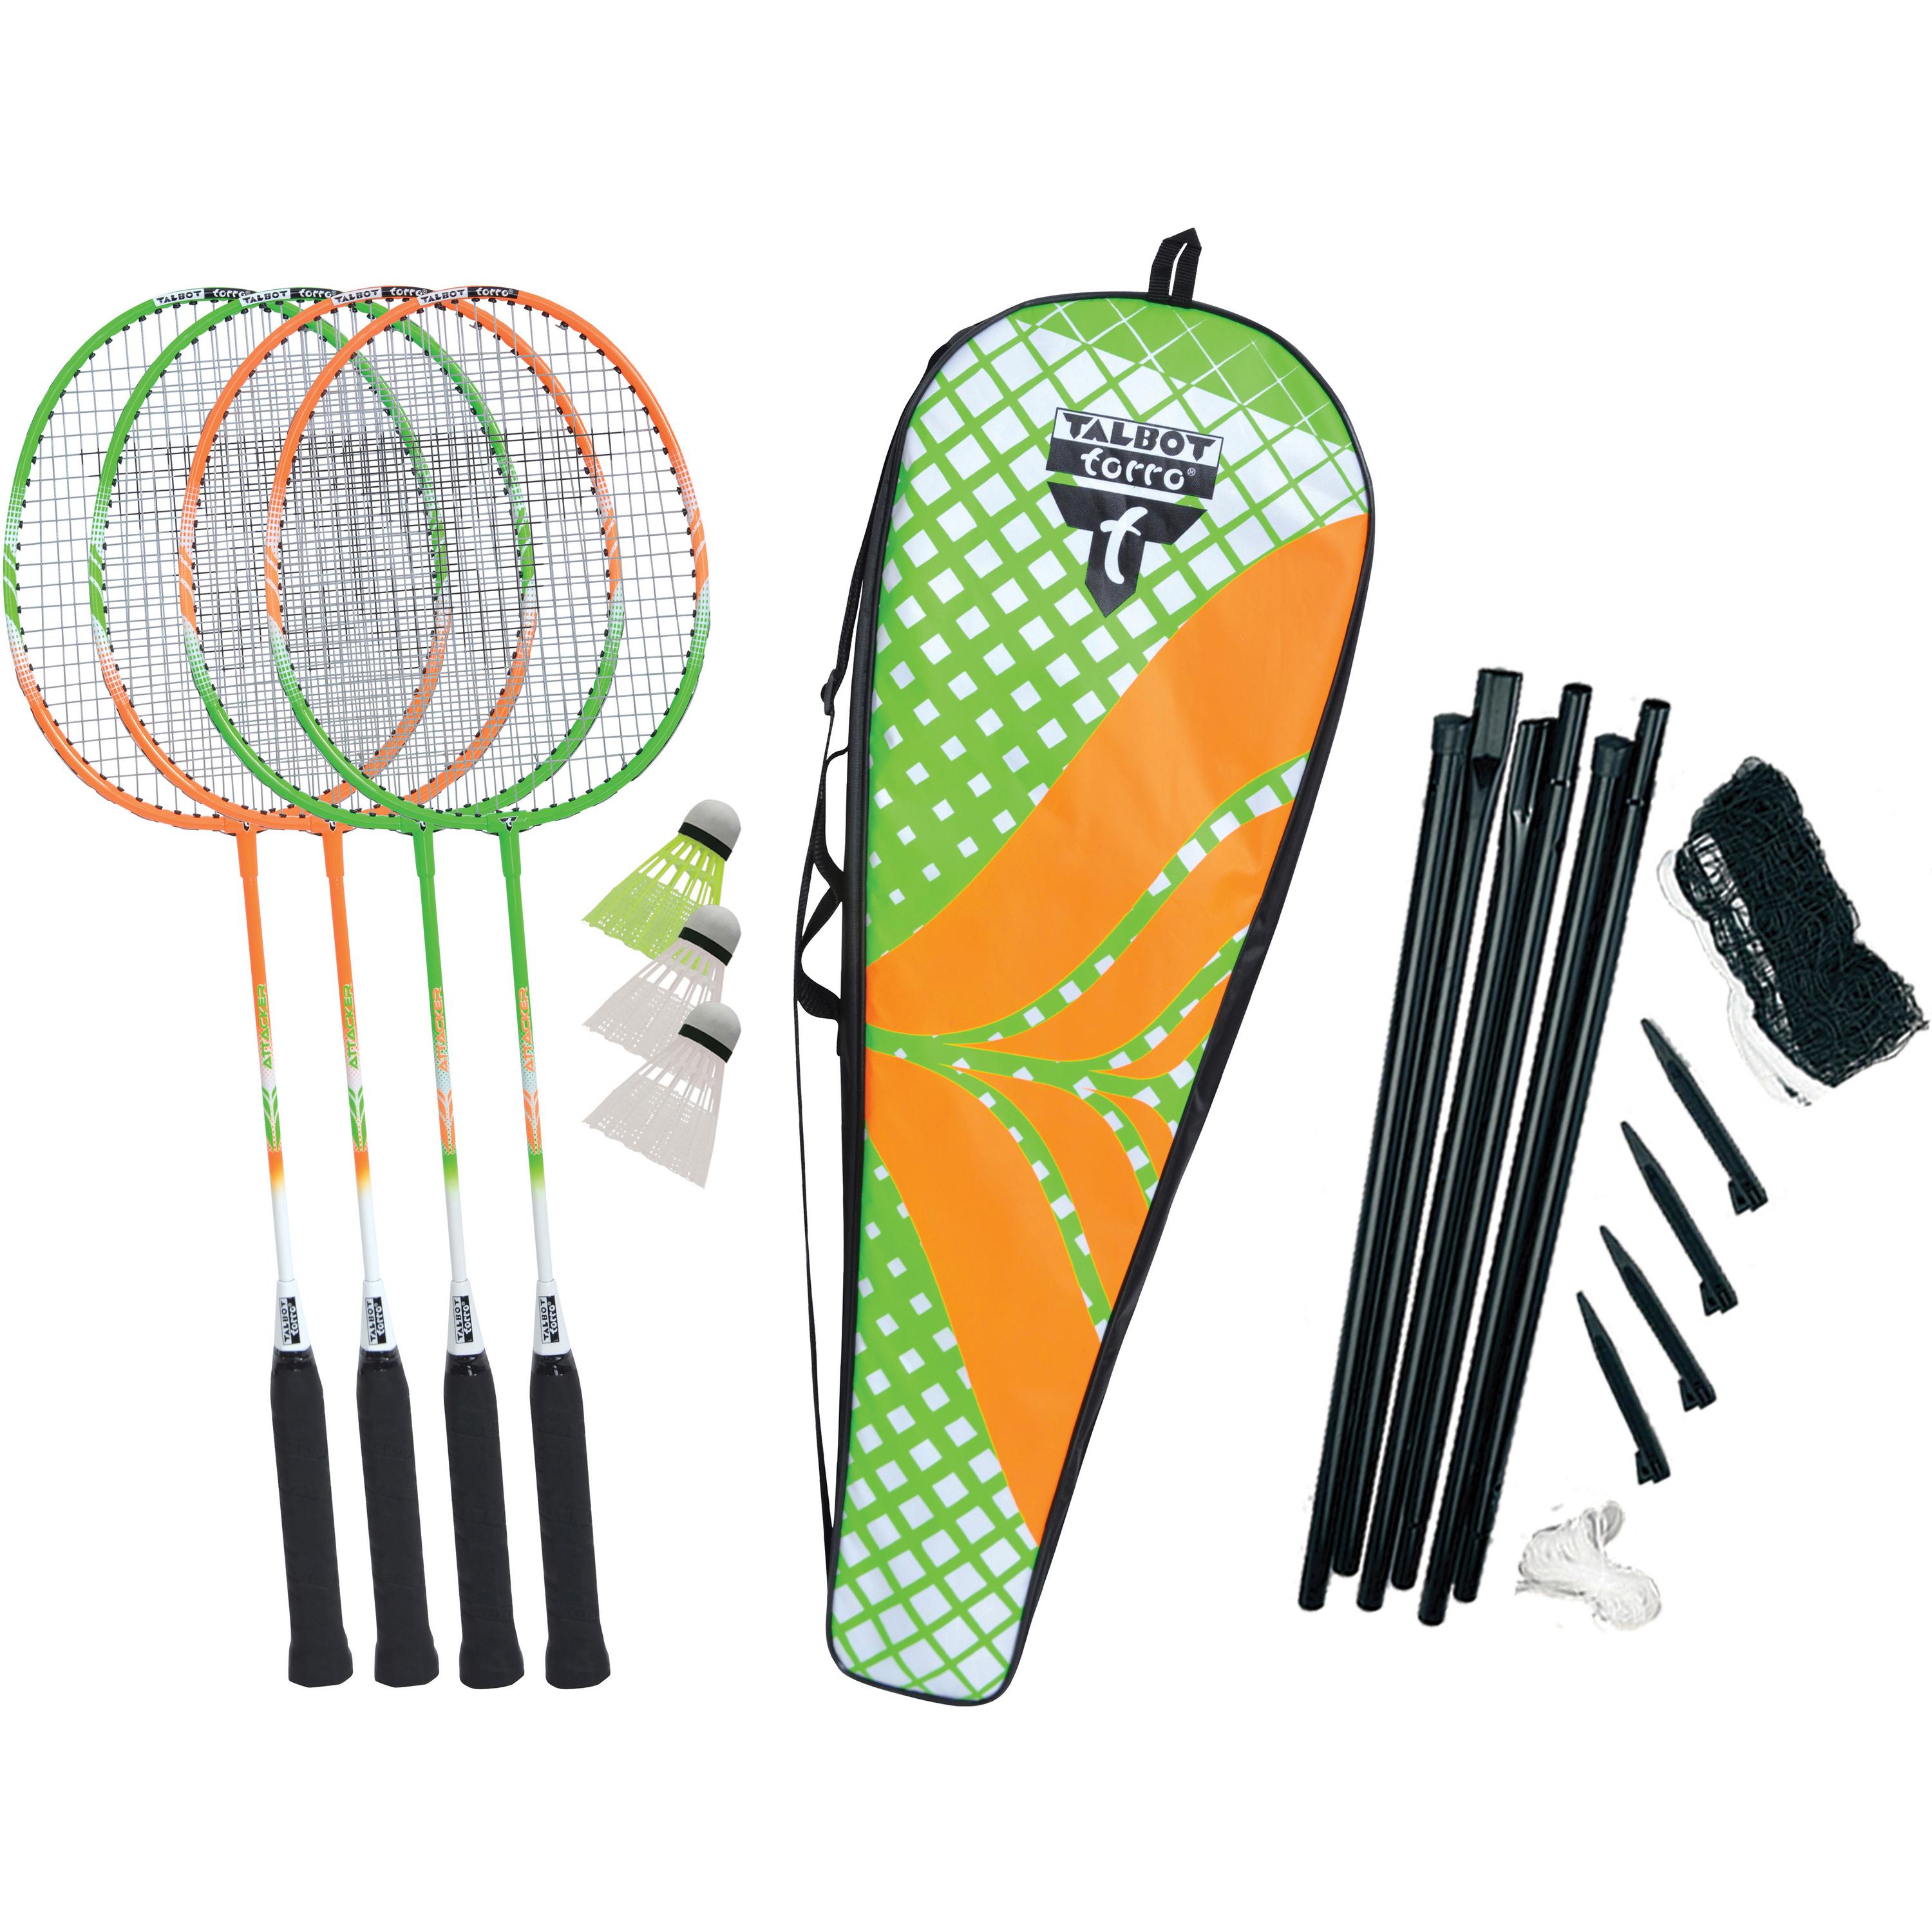 Image of Talbot-Torro Badminton Set